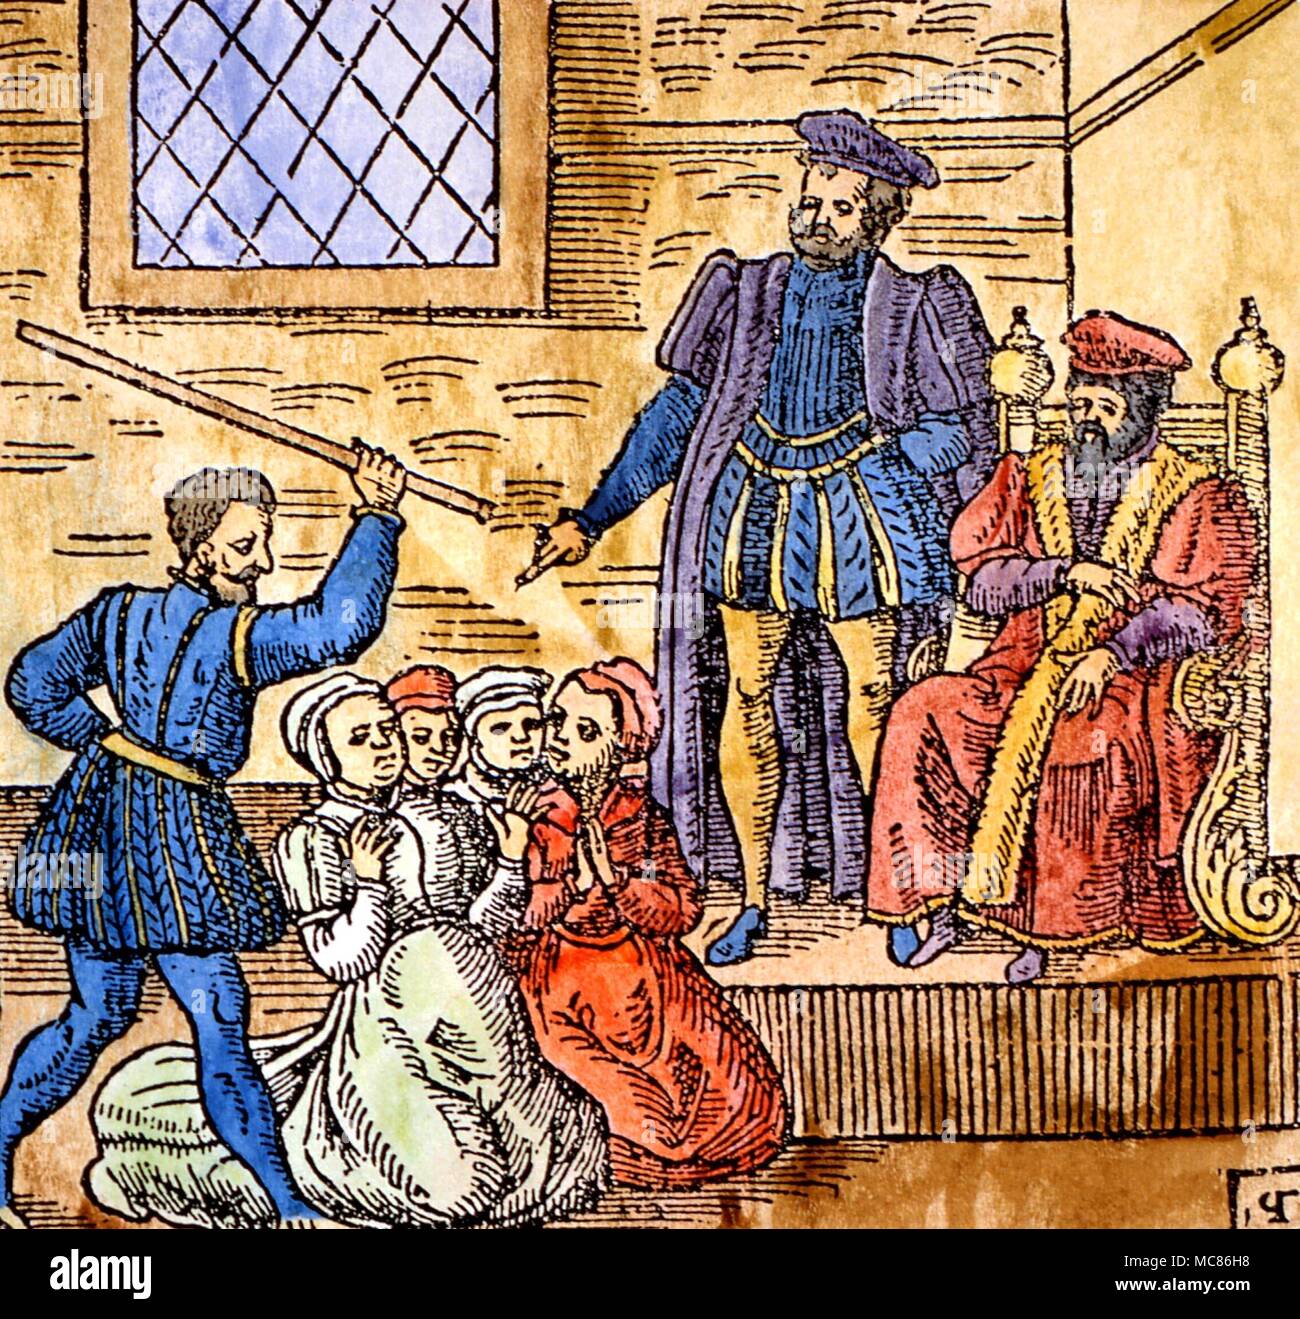 La tortura stregoneria xilografia che mostra il re di Scozia Giacomo VI, poi Giacomo I d'Inghilterra, presidiando la tortura di streghe a Edimburgo, circa 1590. Dal 1591 edizione di "Newes dalla Scozia' Foto Stock